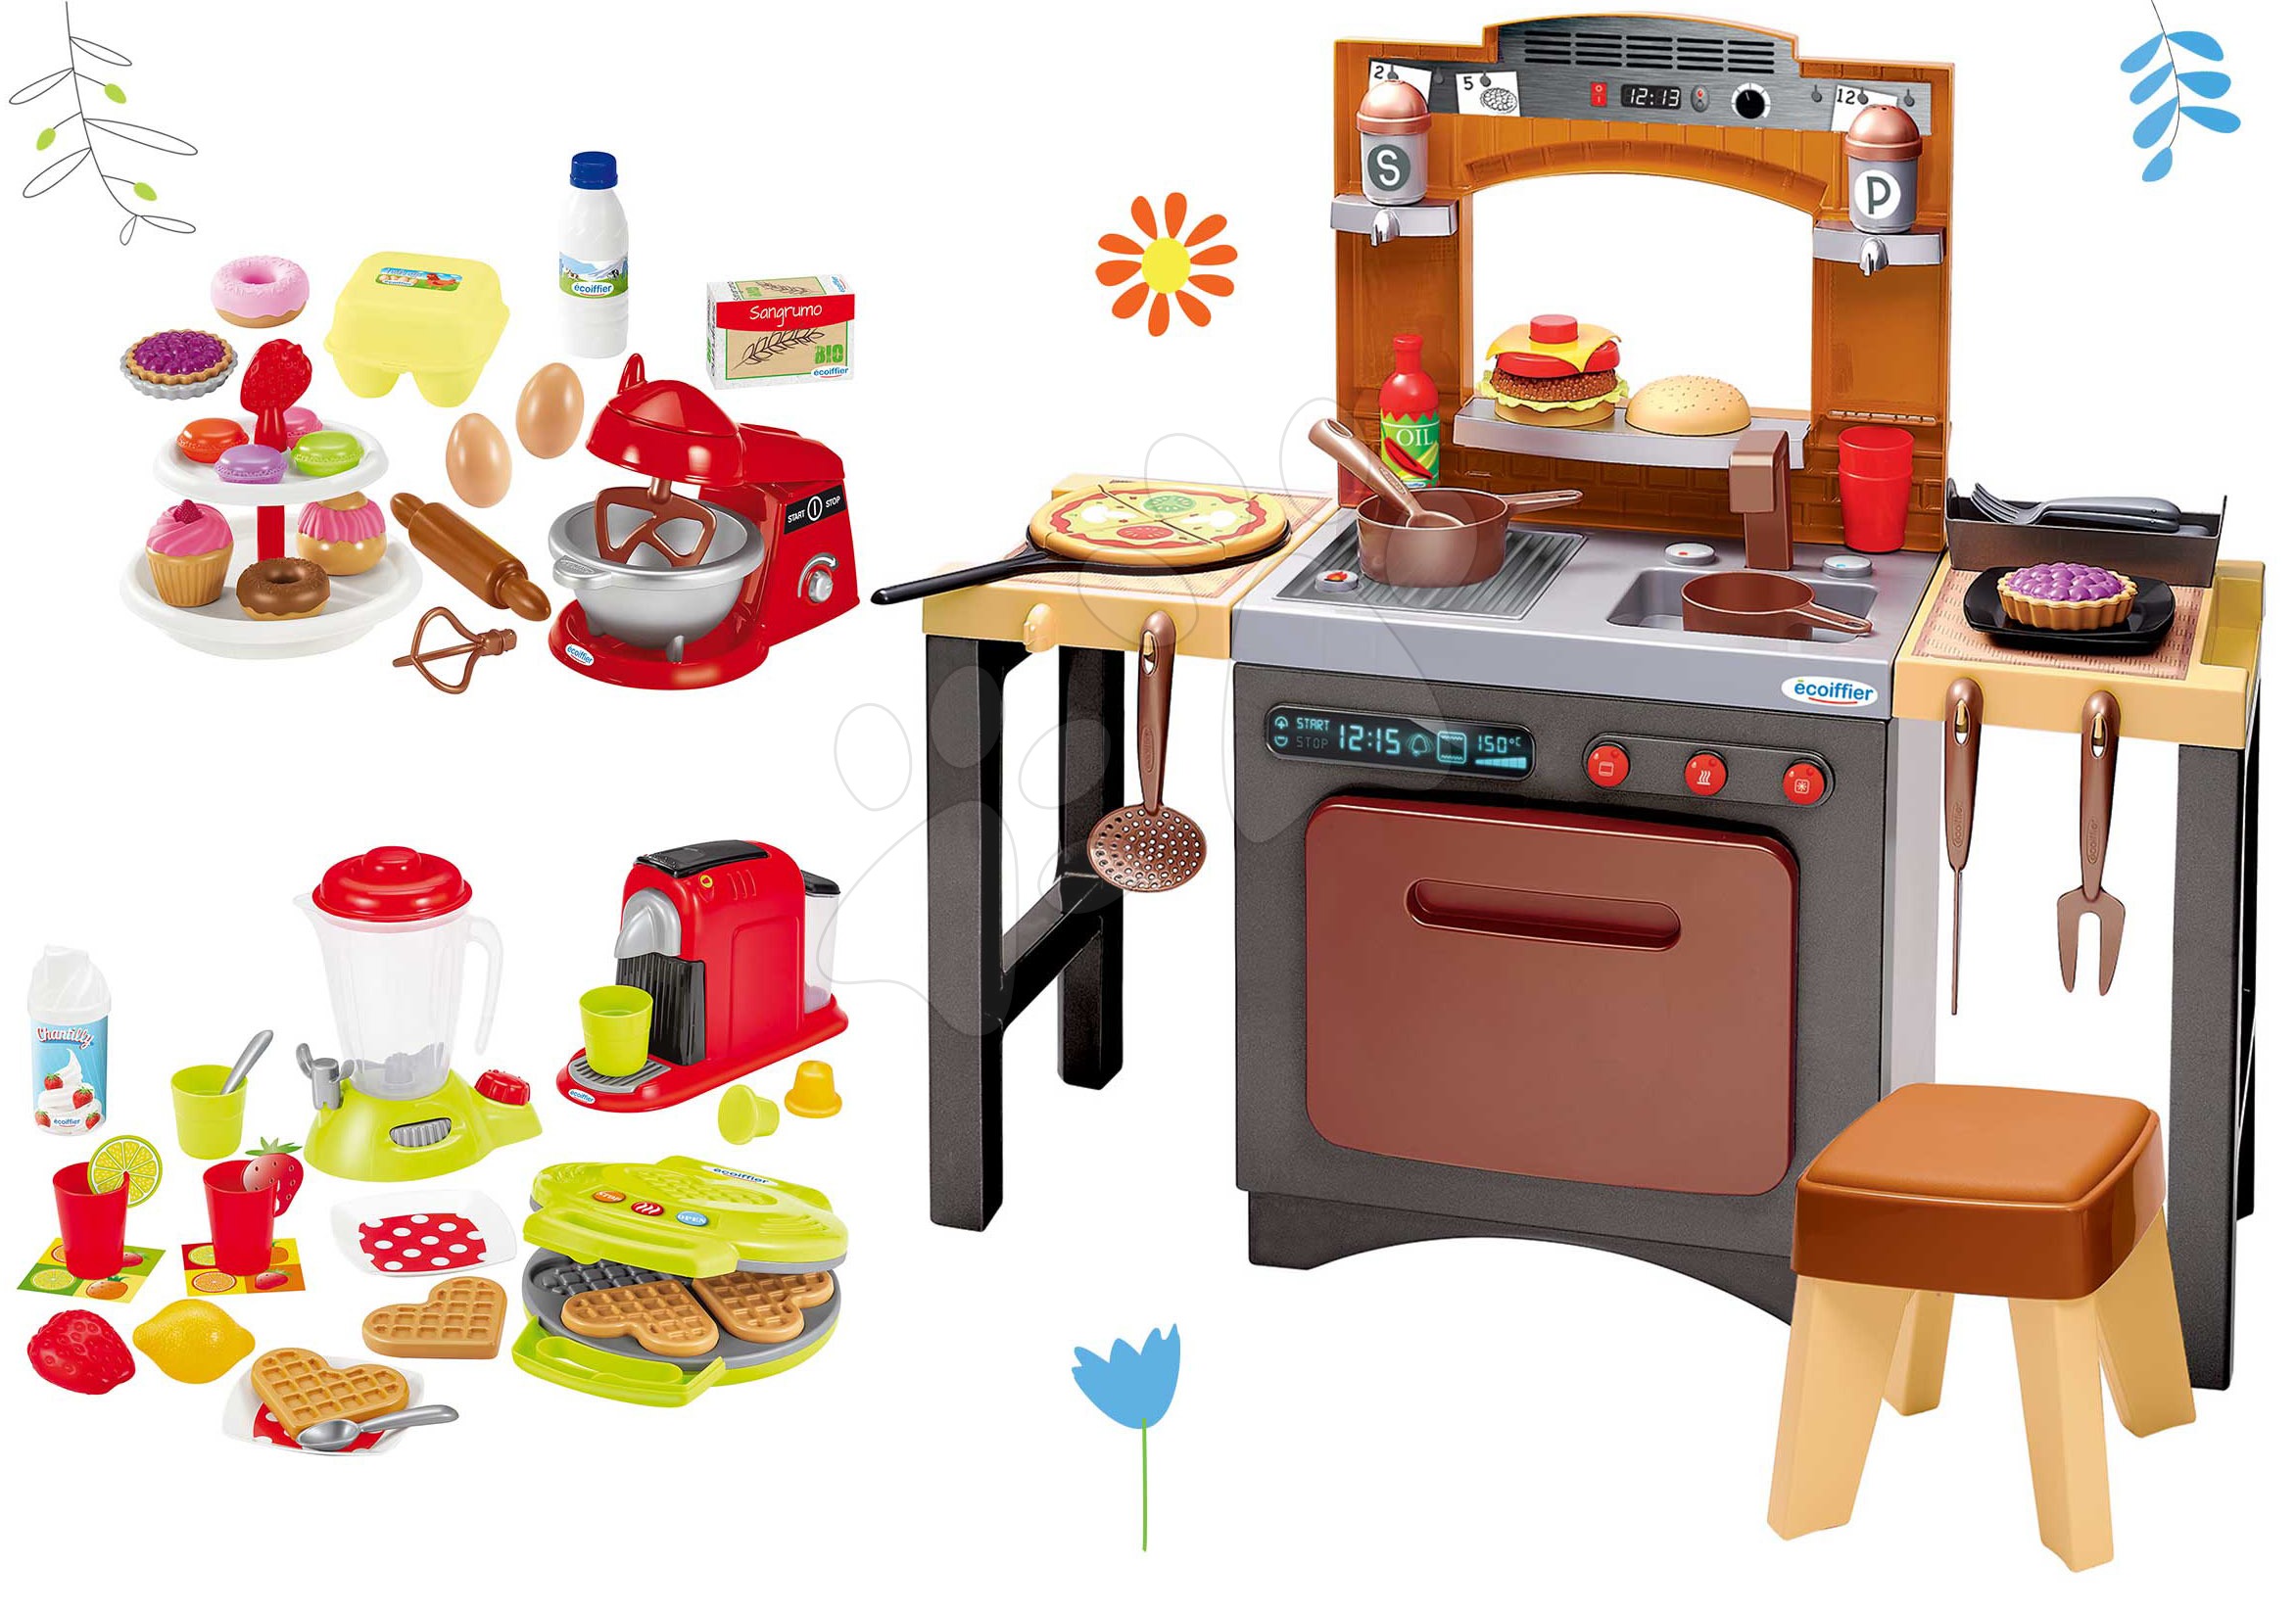 Obyčejné kuchyňky - Set kuchyňka s pizzou Pizzeria Écoiffier oboustranná s vaflovačem a kuchyňským robotem s doplňky